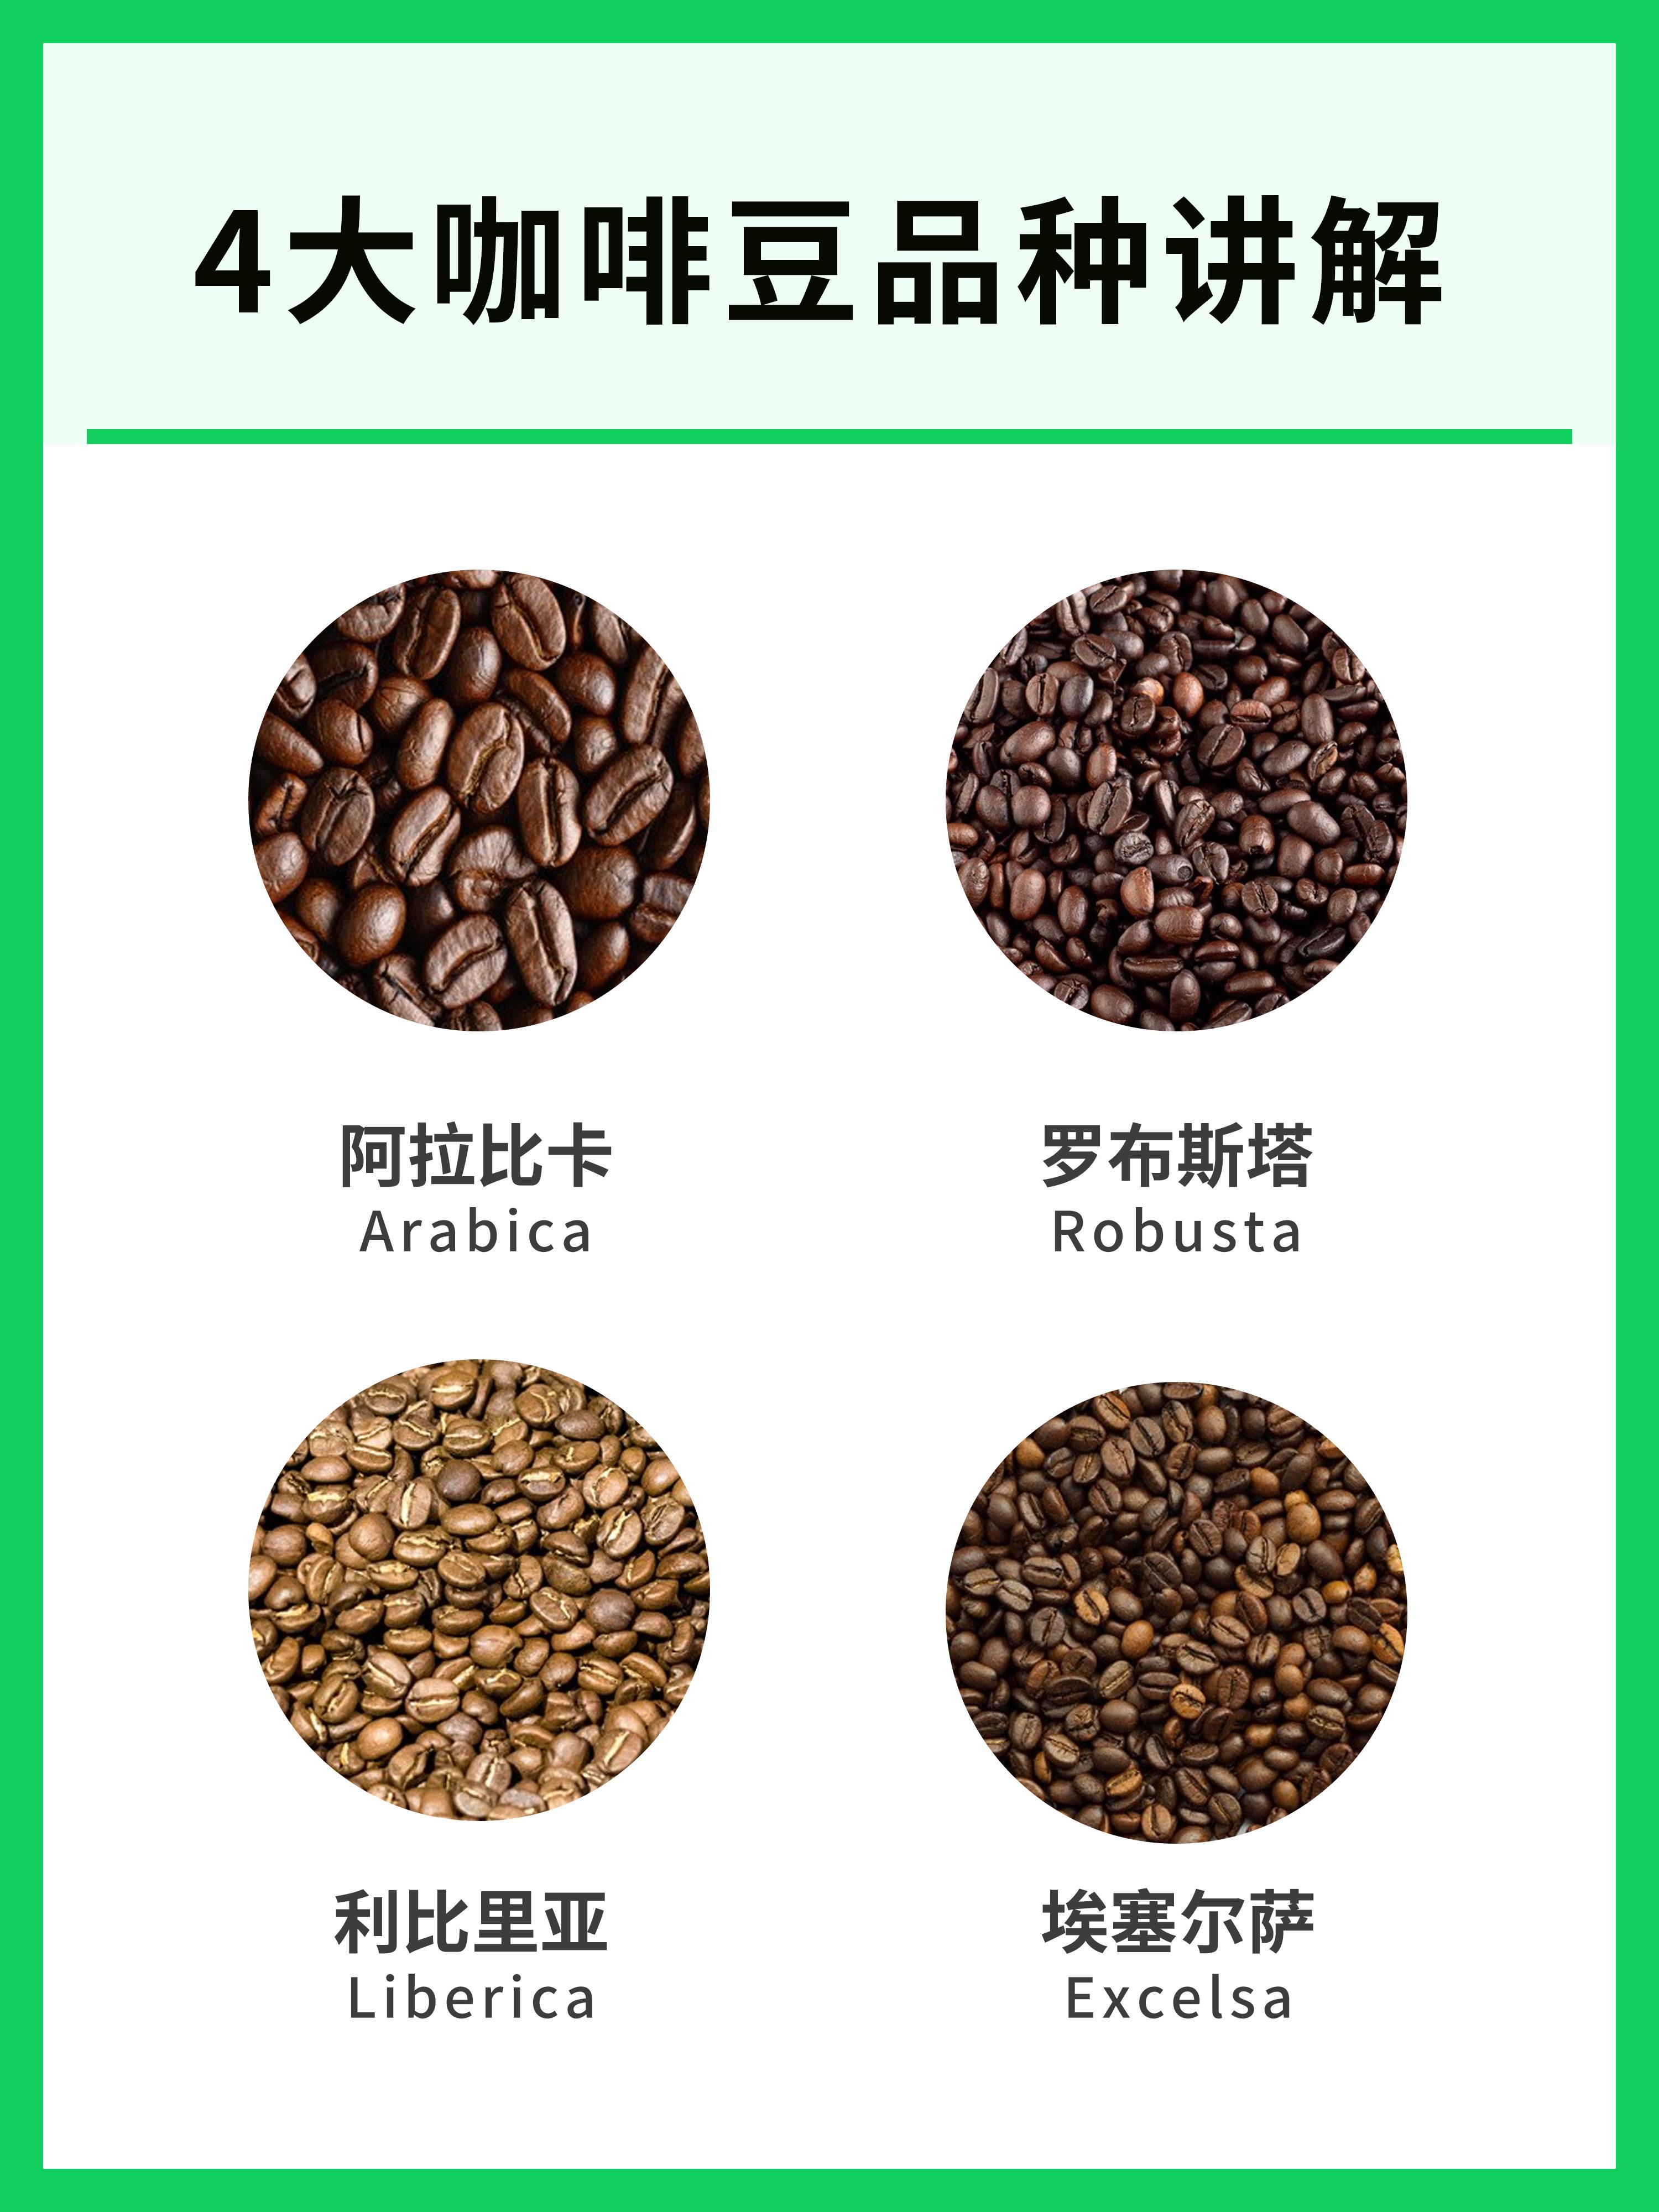 咖啡豆的种类及口味图片